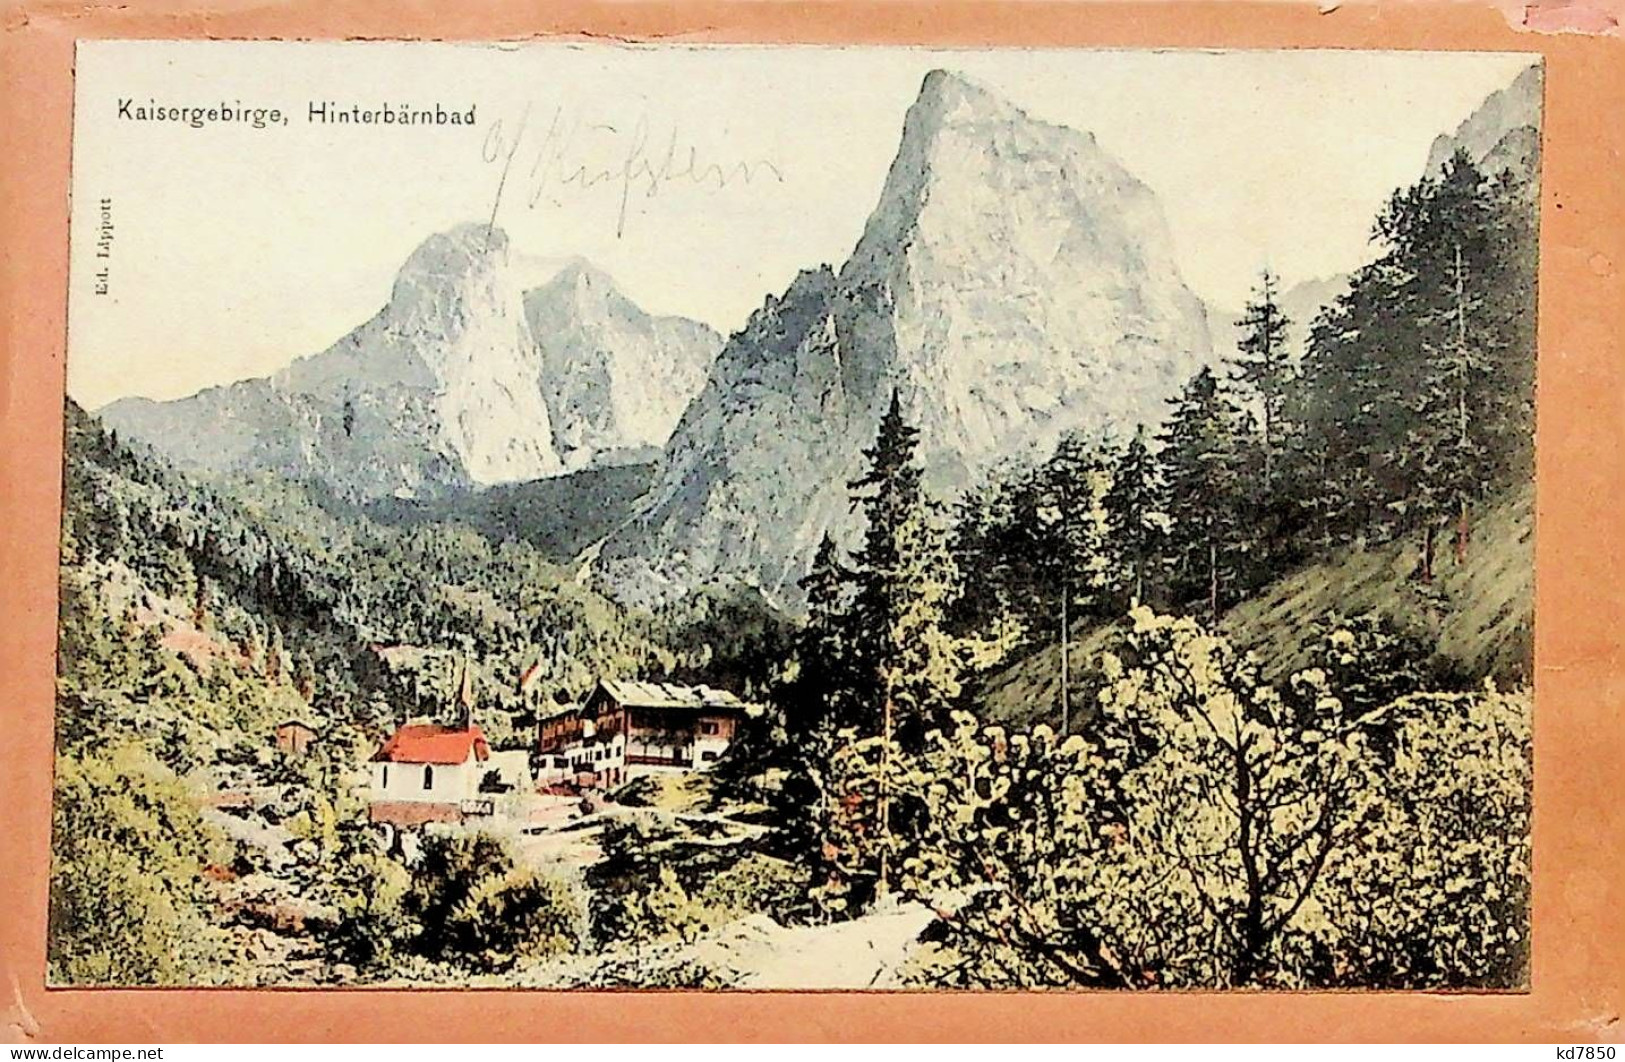 Hinterbärnbad - Original Auf Bestellnummerumschlag Der Grbr. Metz - Kufstein